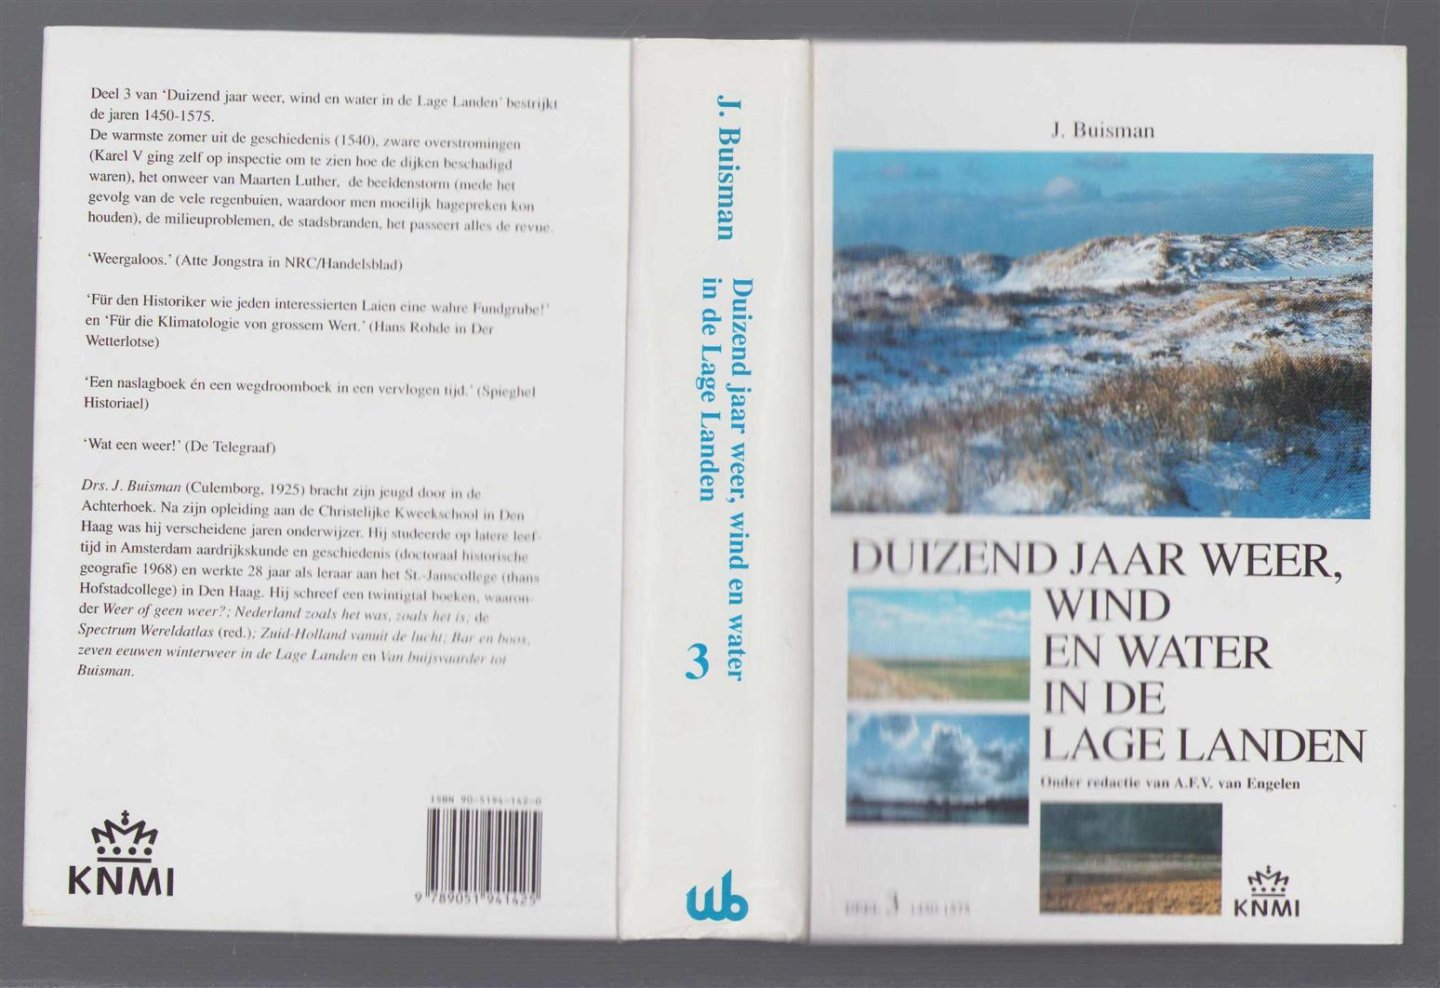 J Buisman - Duizend jaar weer, wind en water in de Lage Landen / Deel 3, 1450-1575 / [illustraties: Studio KNMI en Jan Buisman].